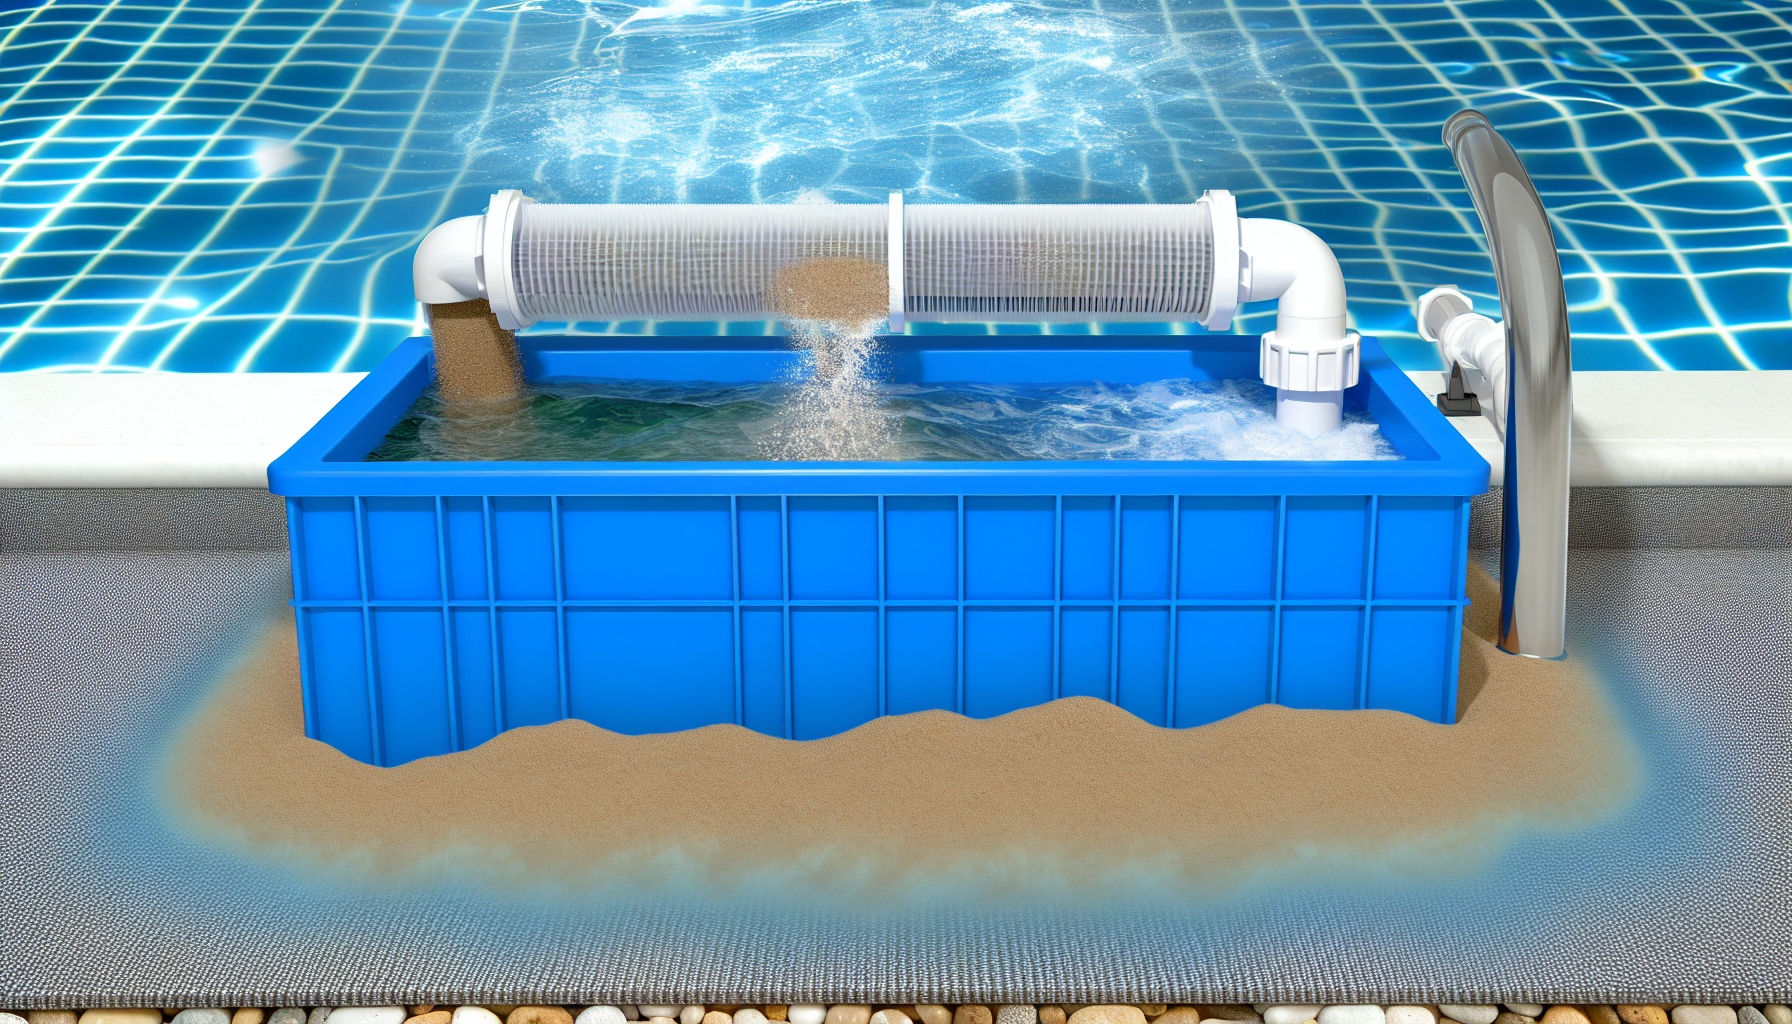 Ein aufblasbarer Pool mit Filteranlage auf einer Terrasse nahe einer Sandfläche.